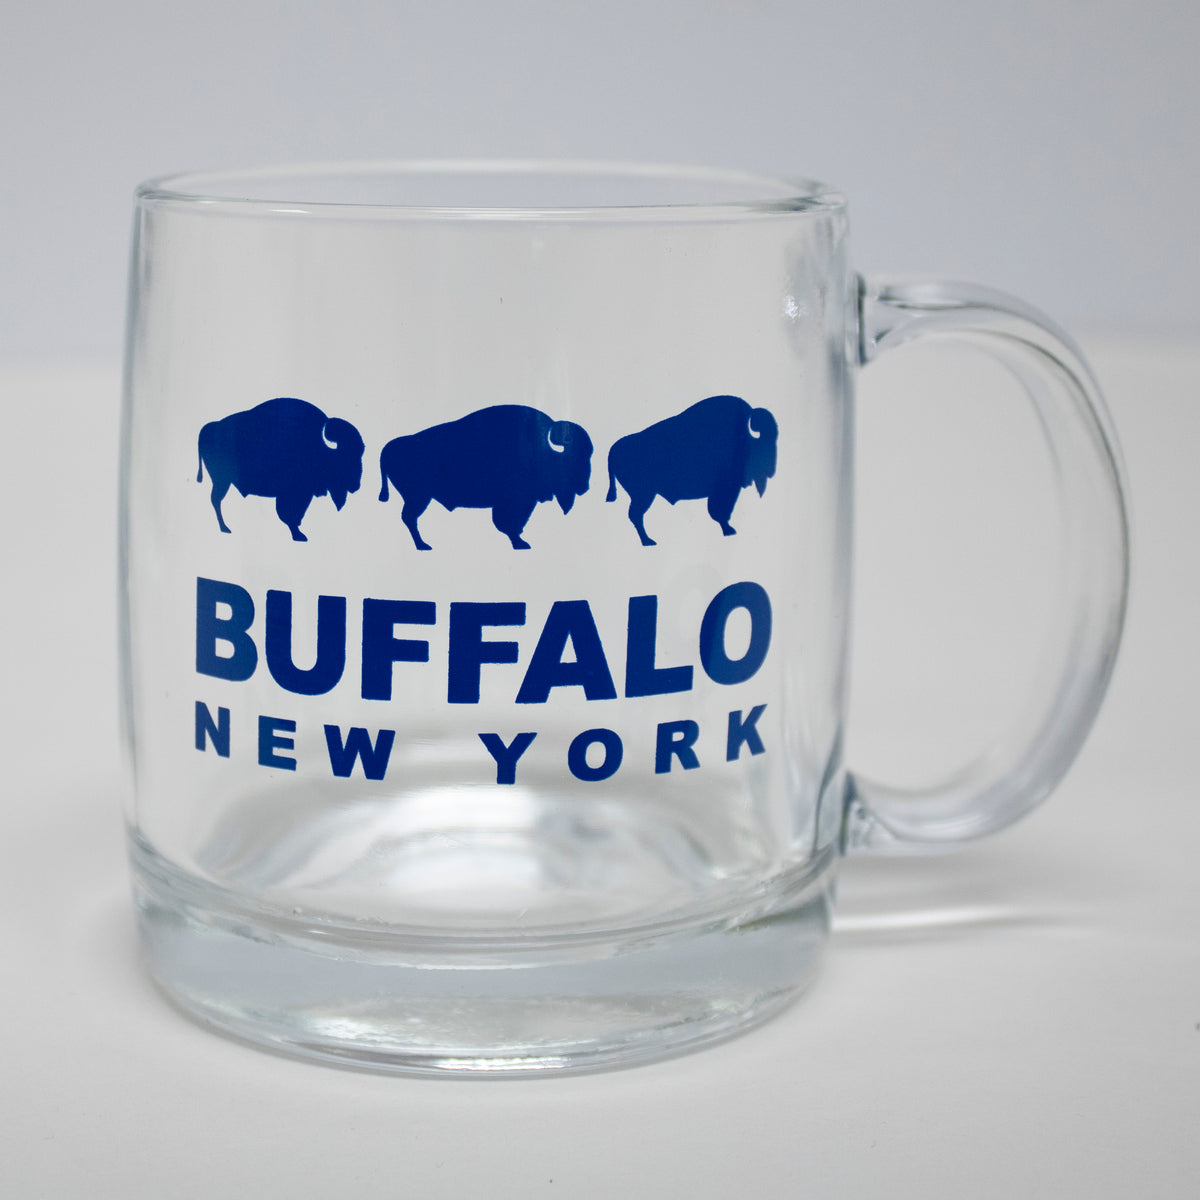 Buffalo Etched Double Wall Glass Mugs